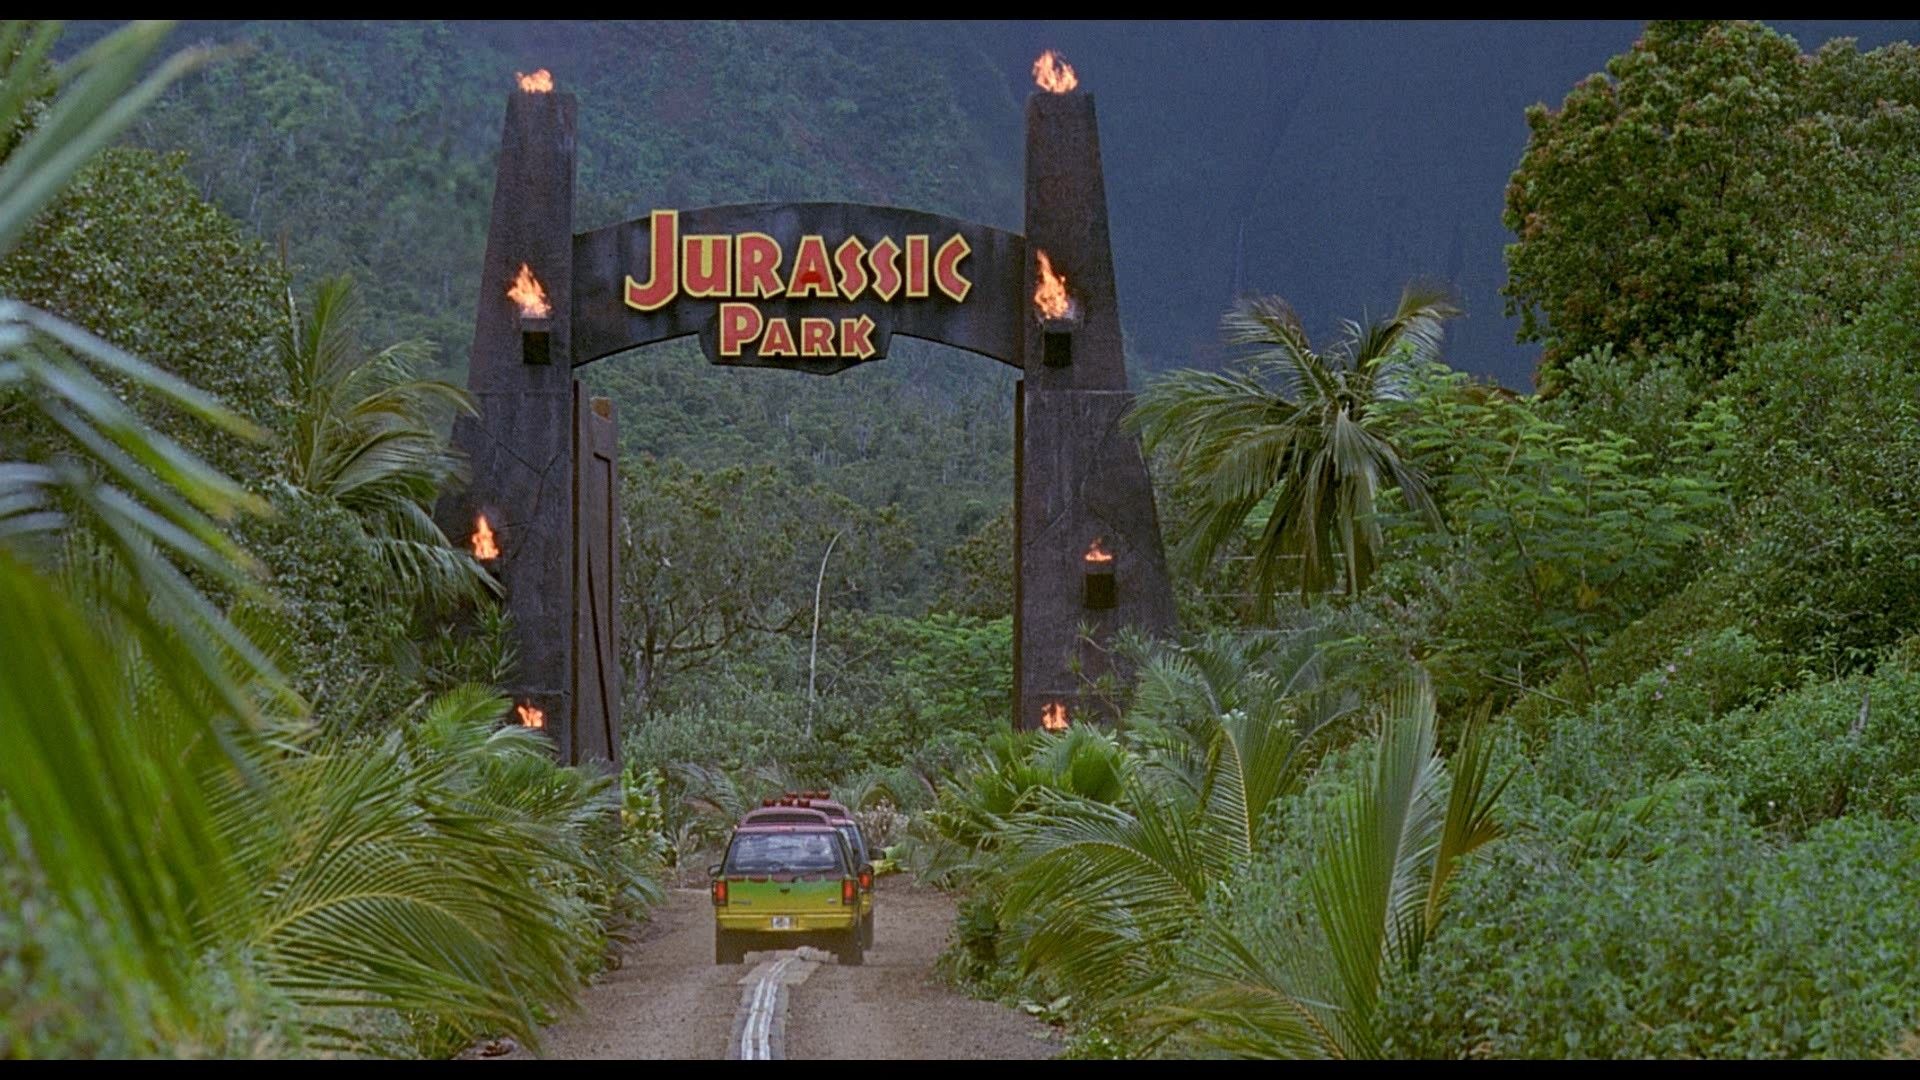 Fondos de Jurassic Park (más de 76 fotos)